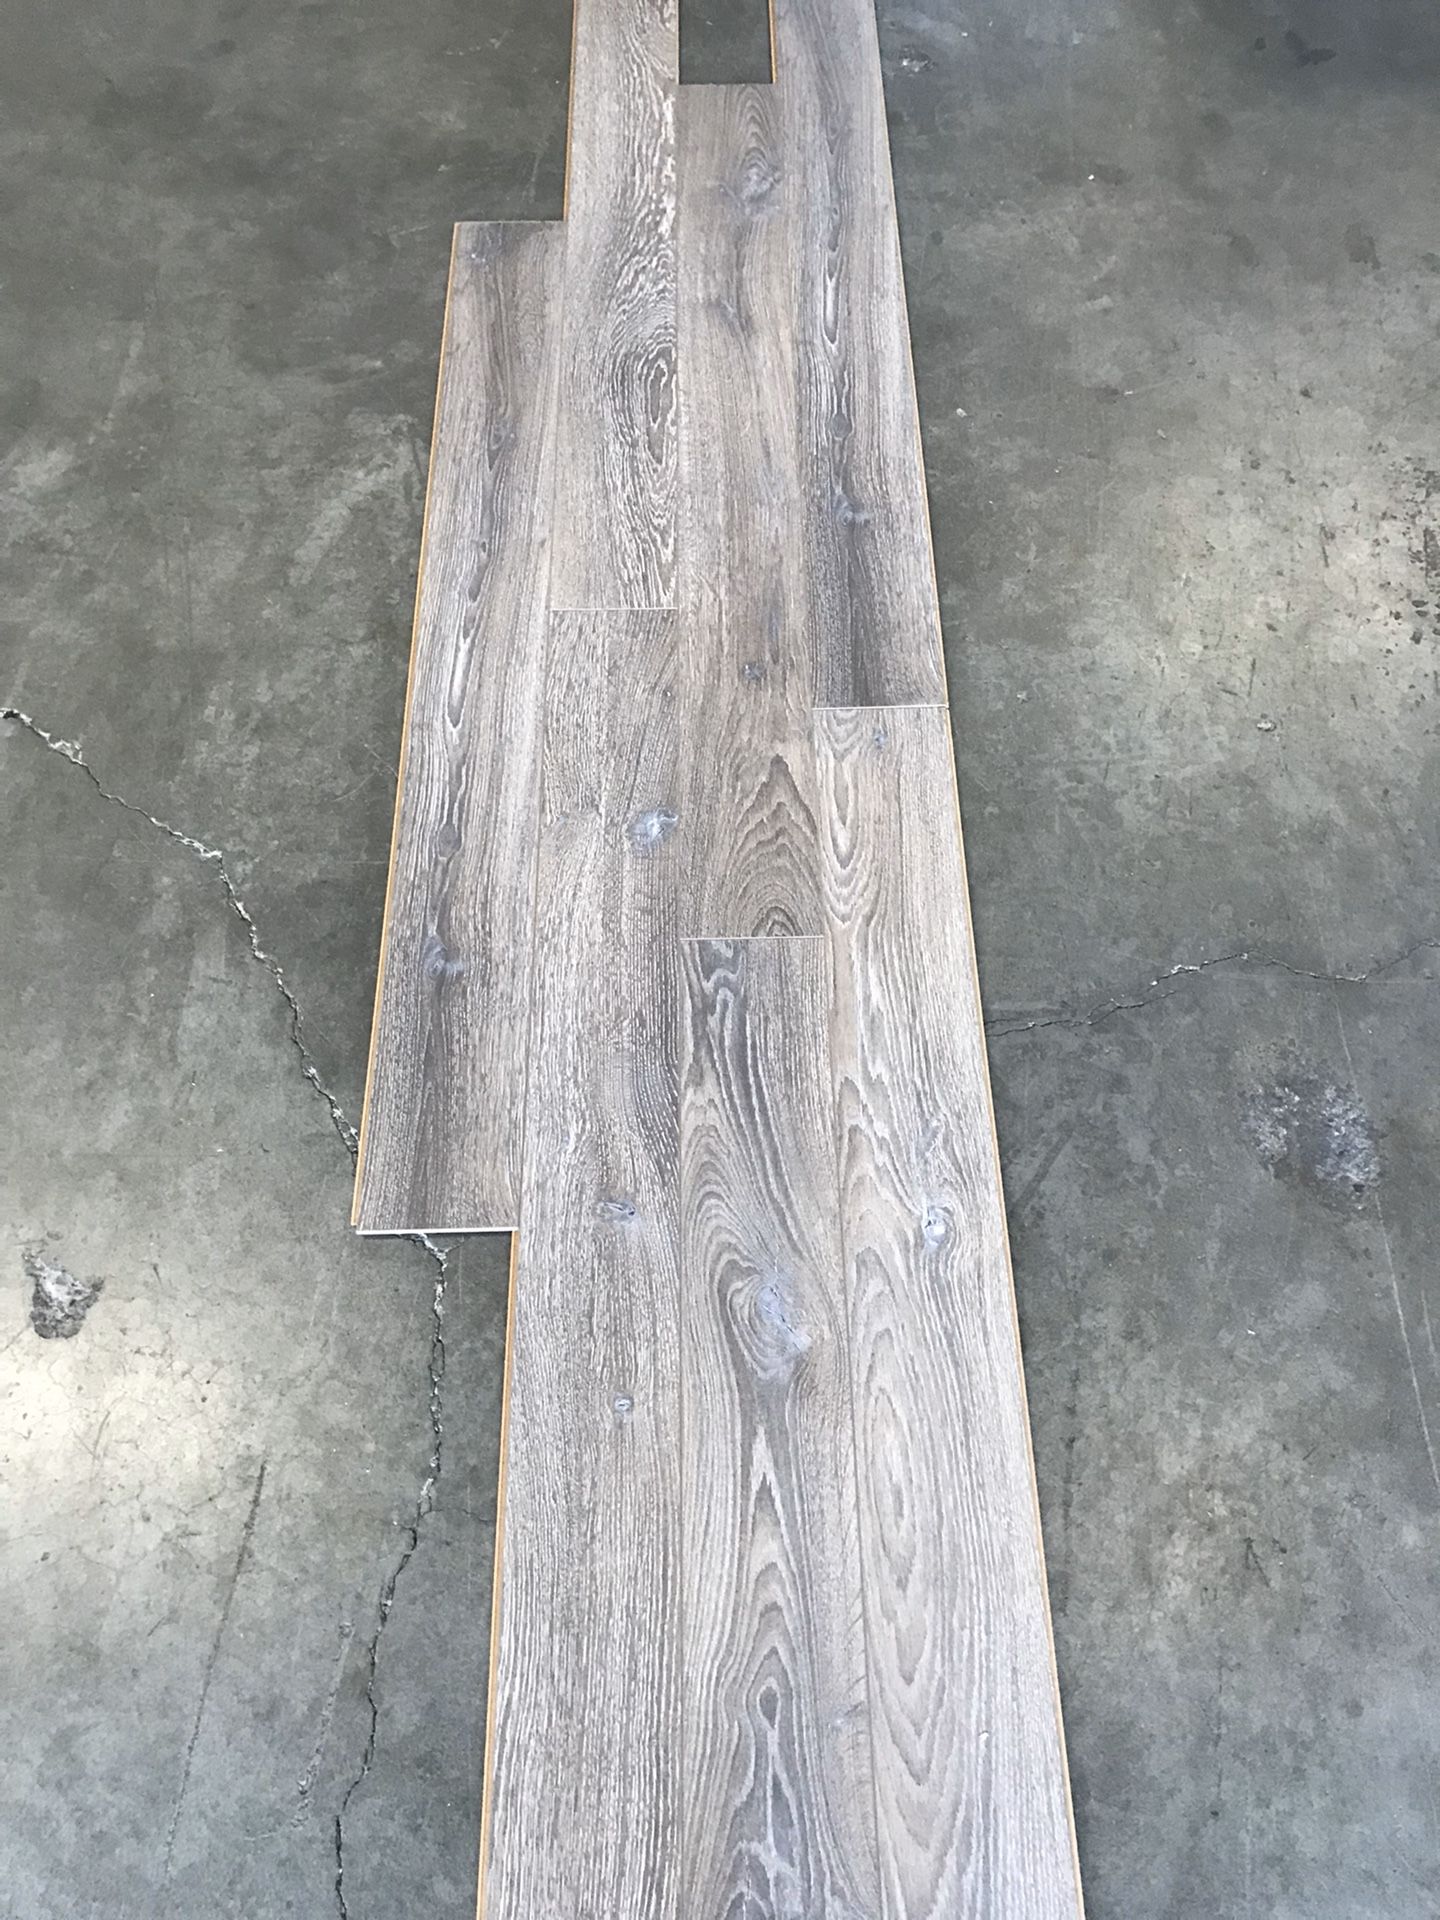 Laminate flooring 3/8” pad attached